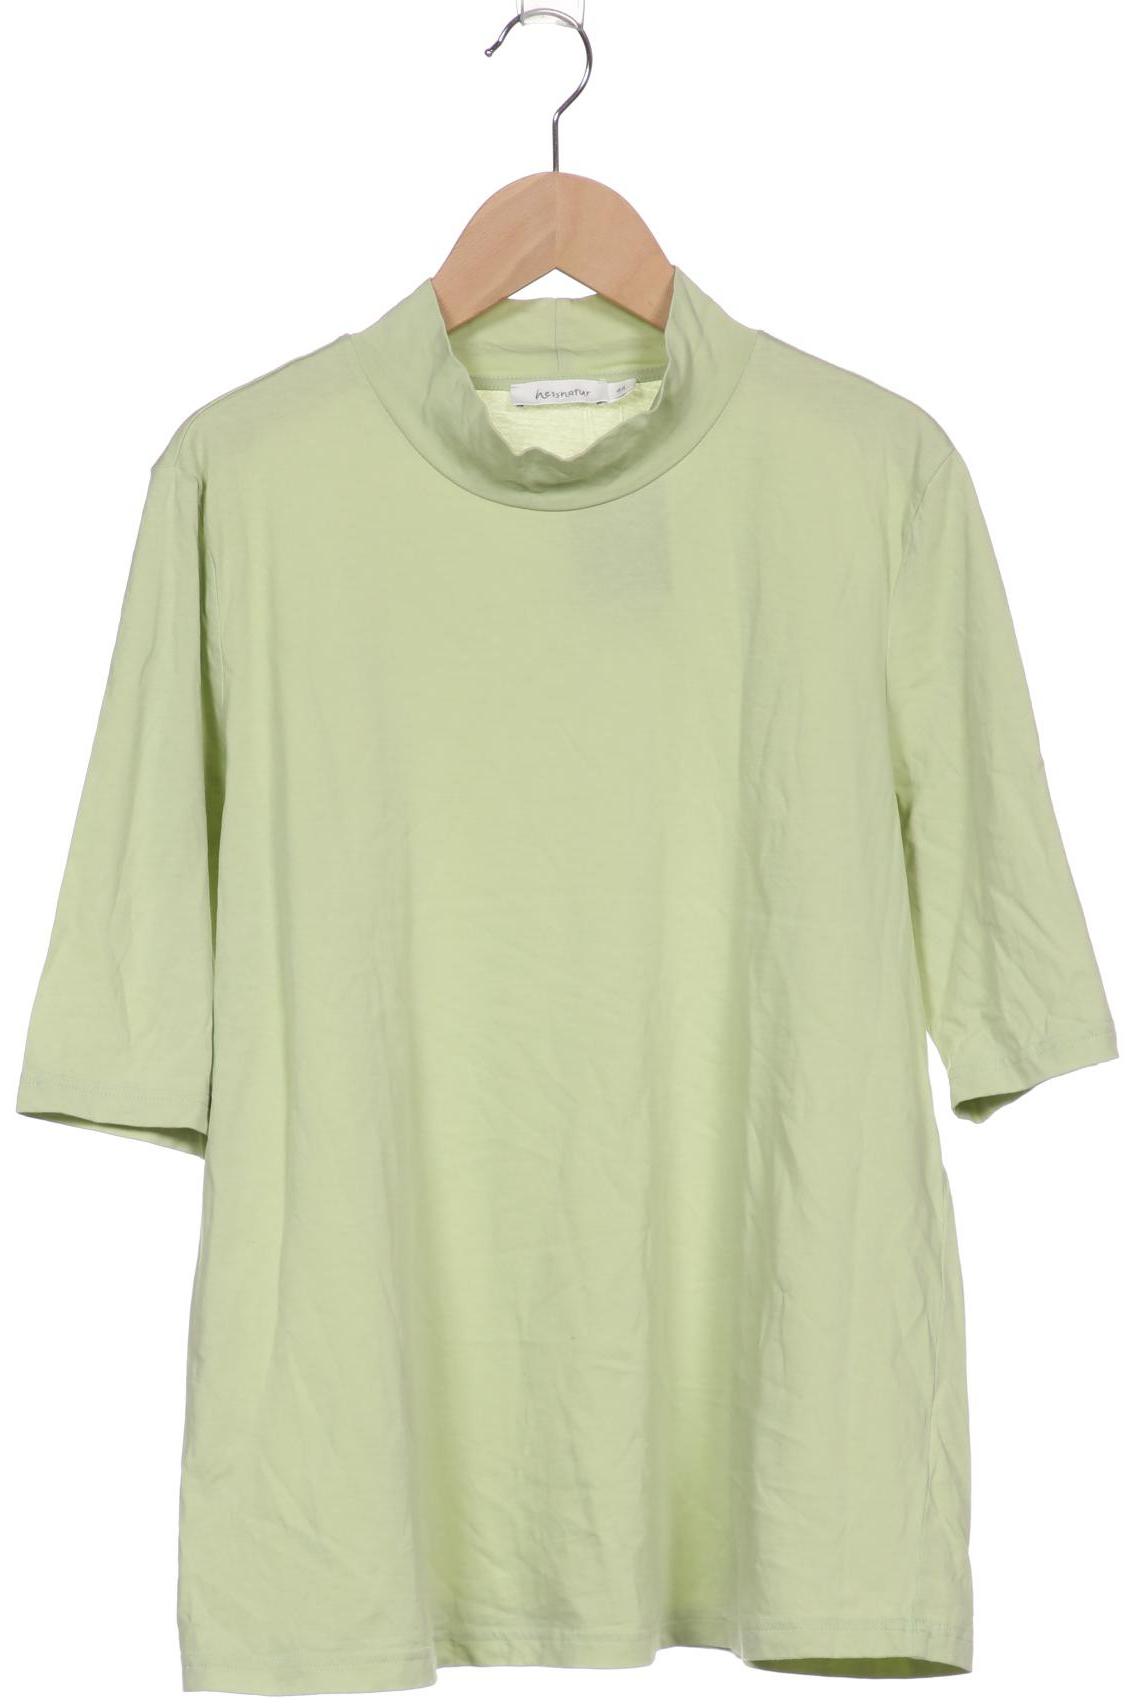 hessnatur Damen T-Shirt, hellgrün, Gr. 44 von hessnatur